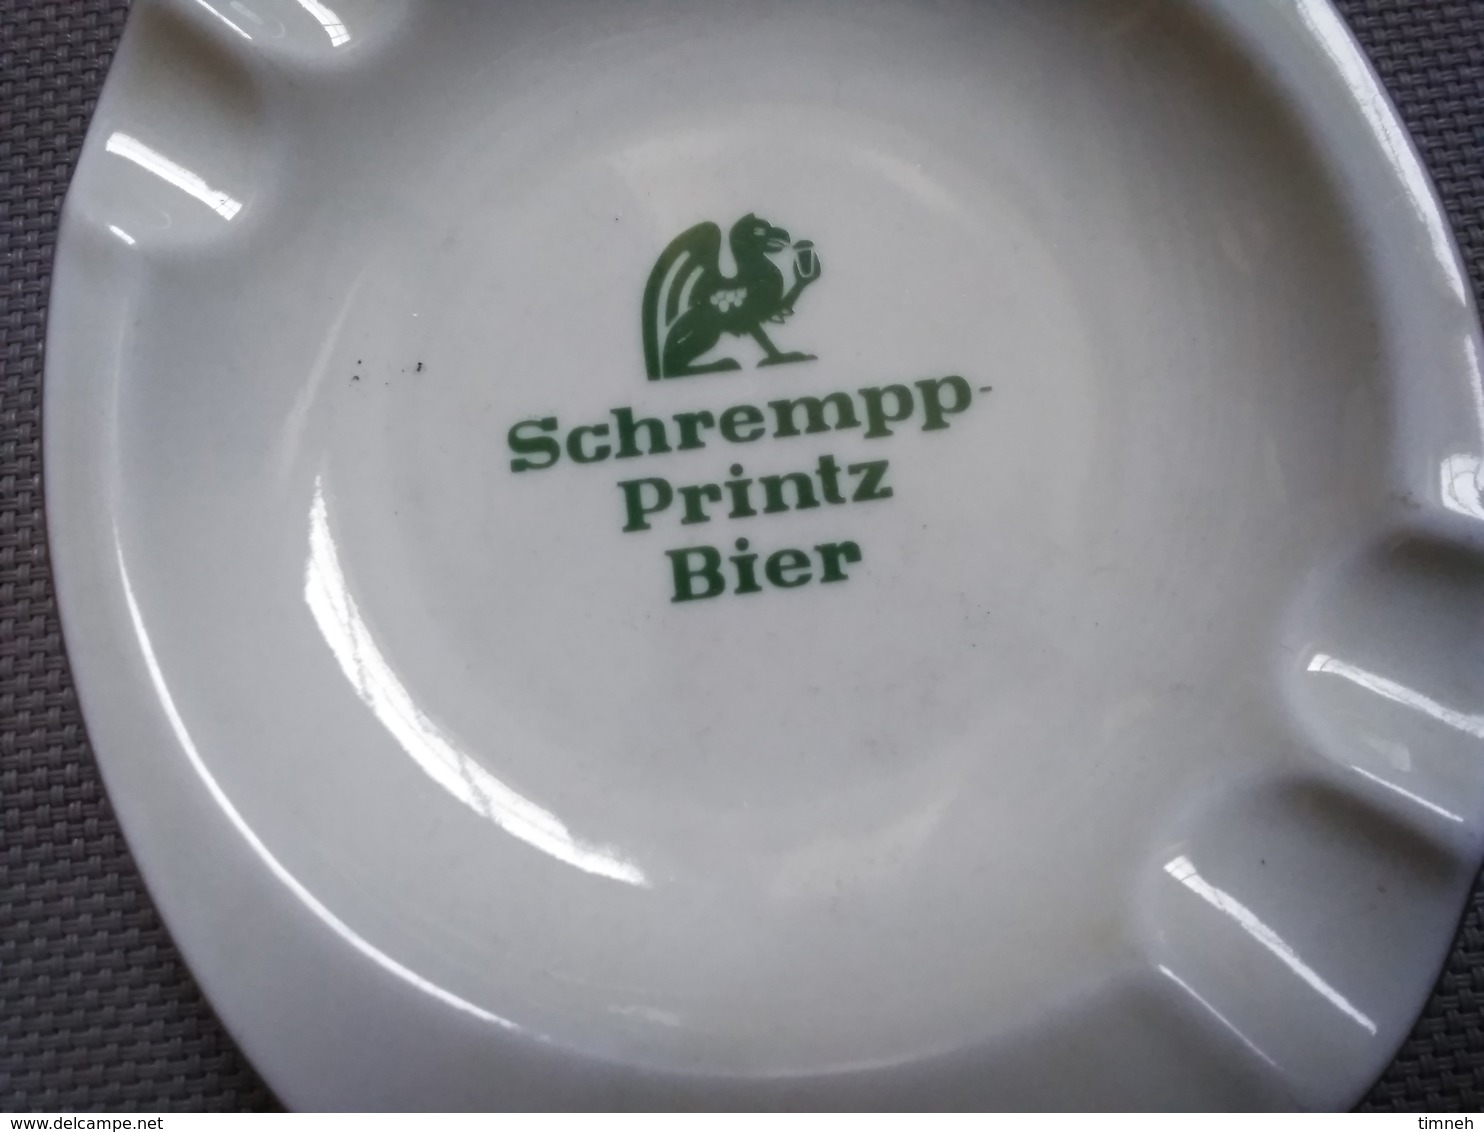 FAÏENCE EMIL SAHM PLANKENHAMMER FLOSS BAVARIA GERMANY - SCHREMPP PRINTZ BIER - CENDRIER 15x12cm - FAÏENCE - Aschenbecher